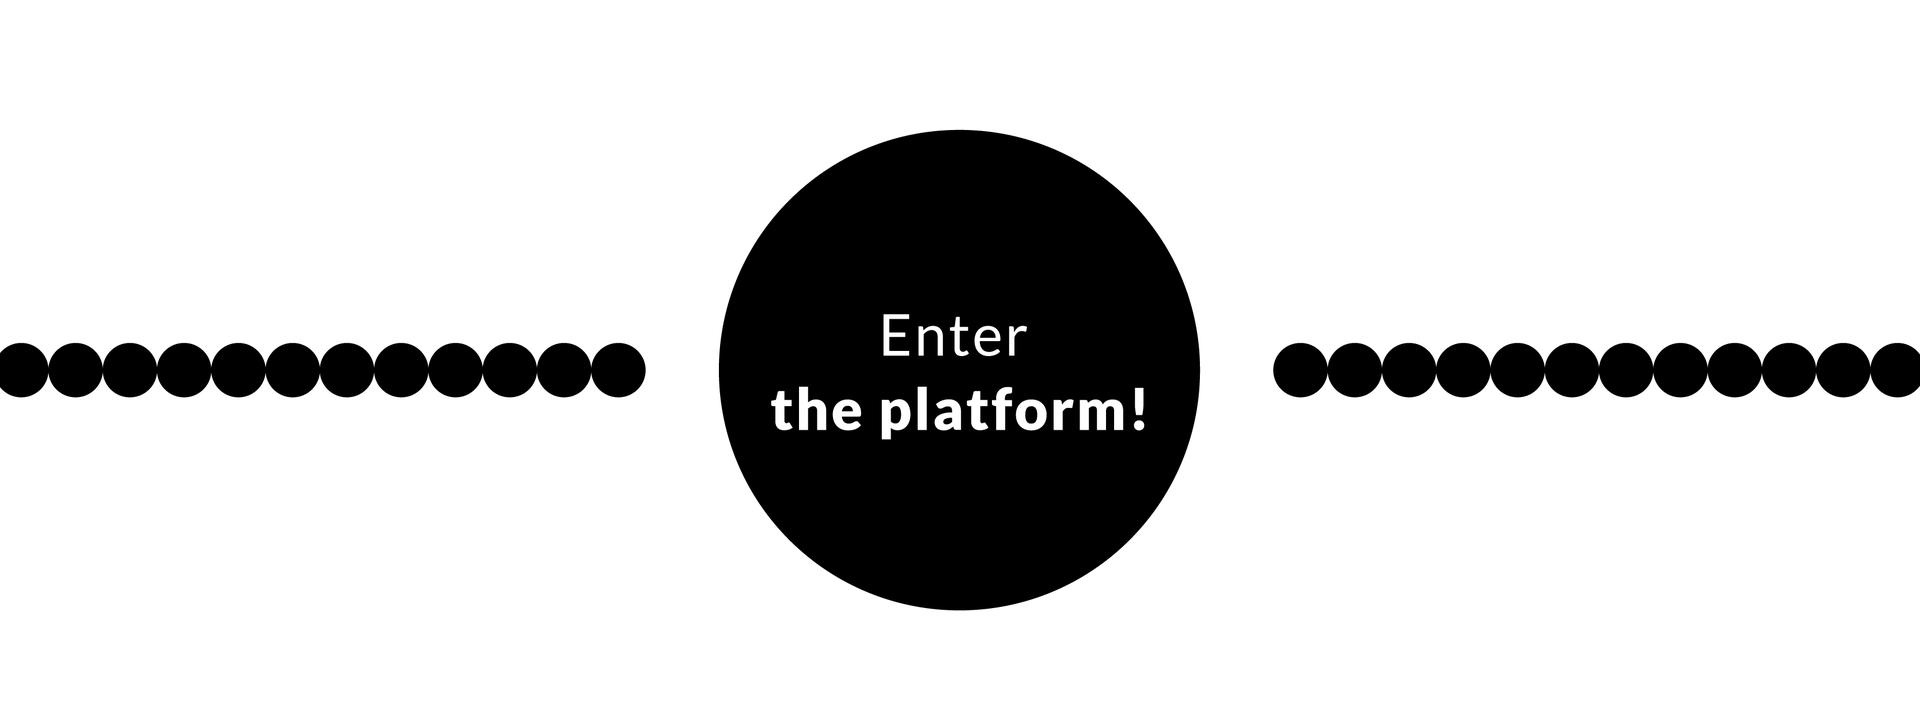 Enter the platform!